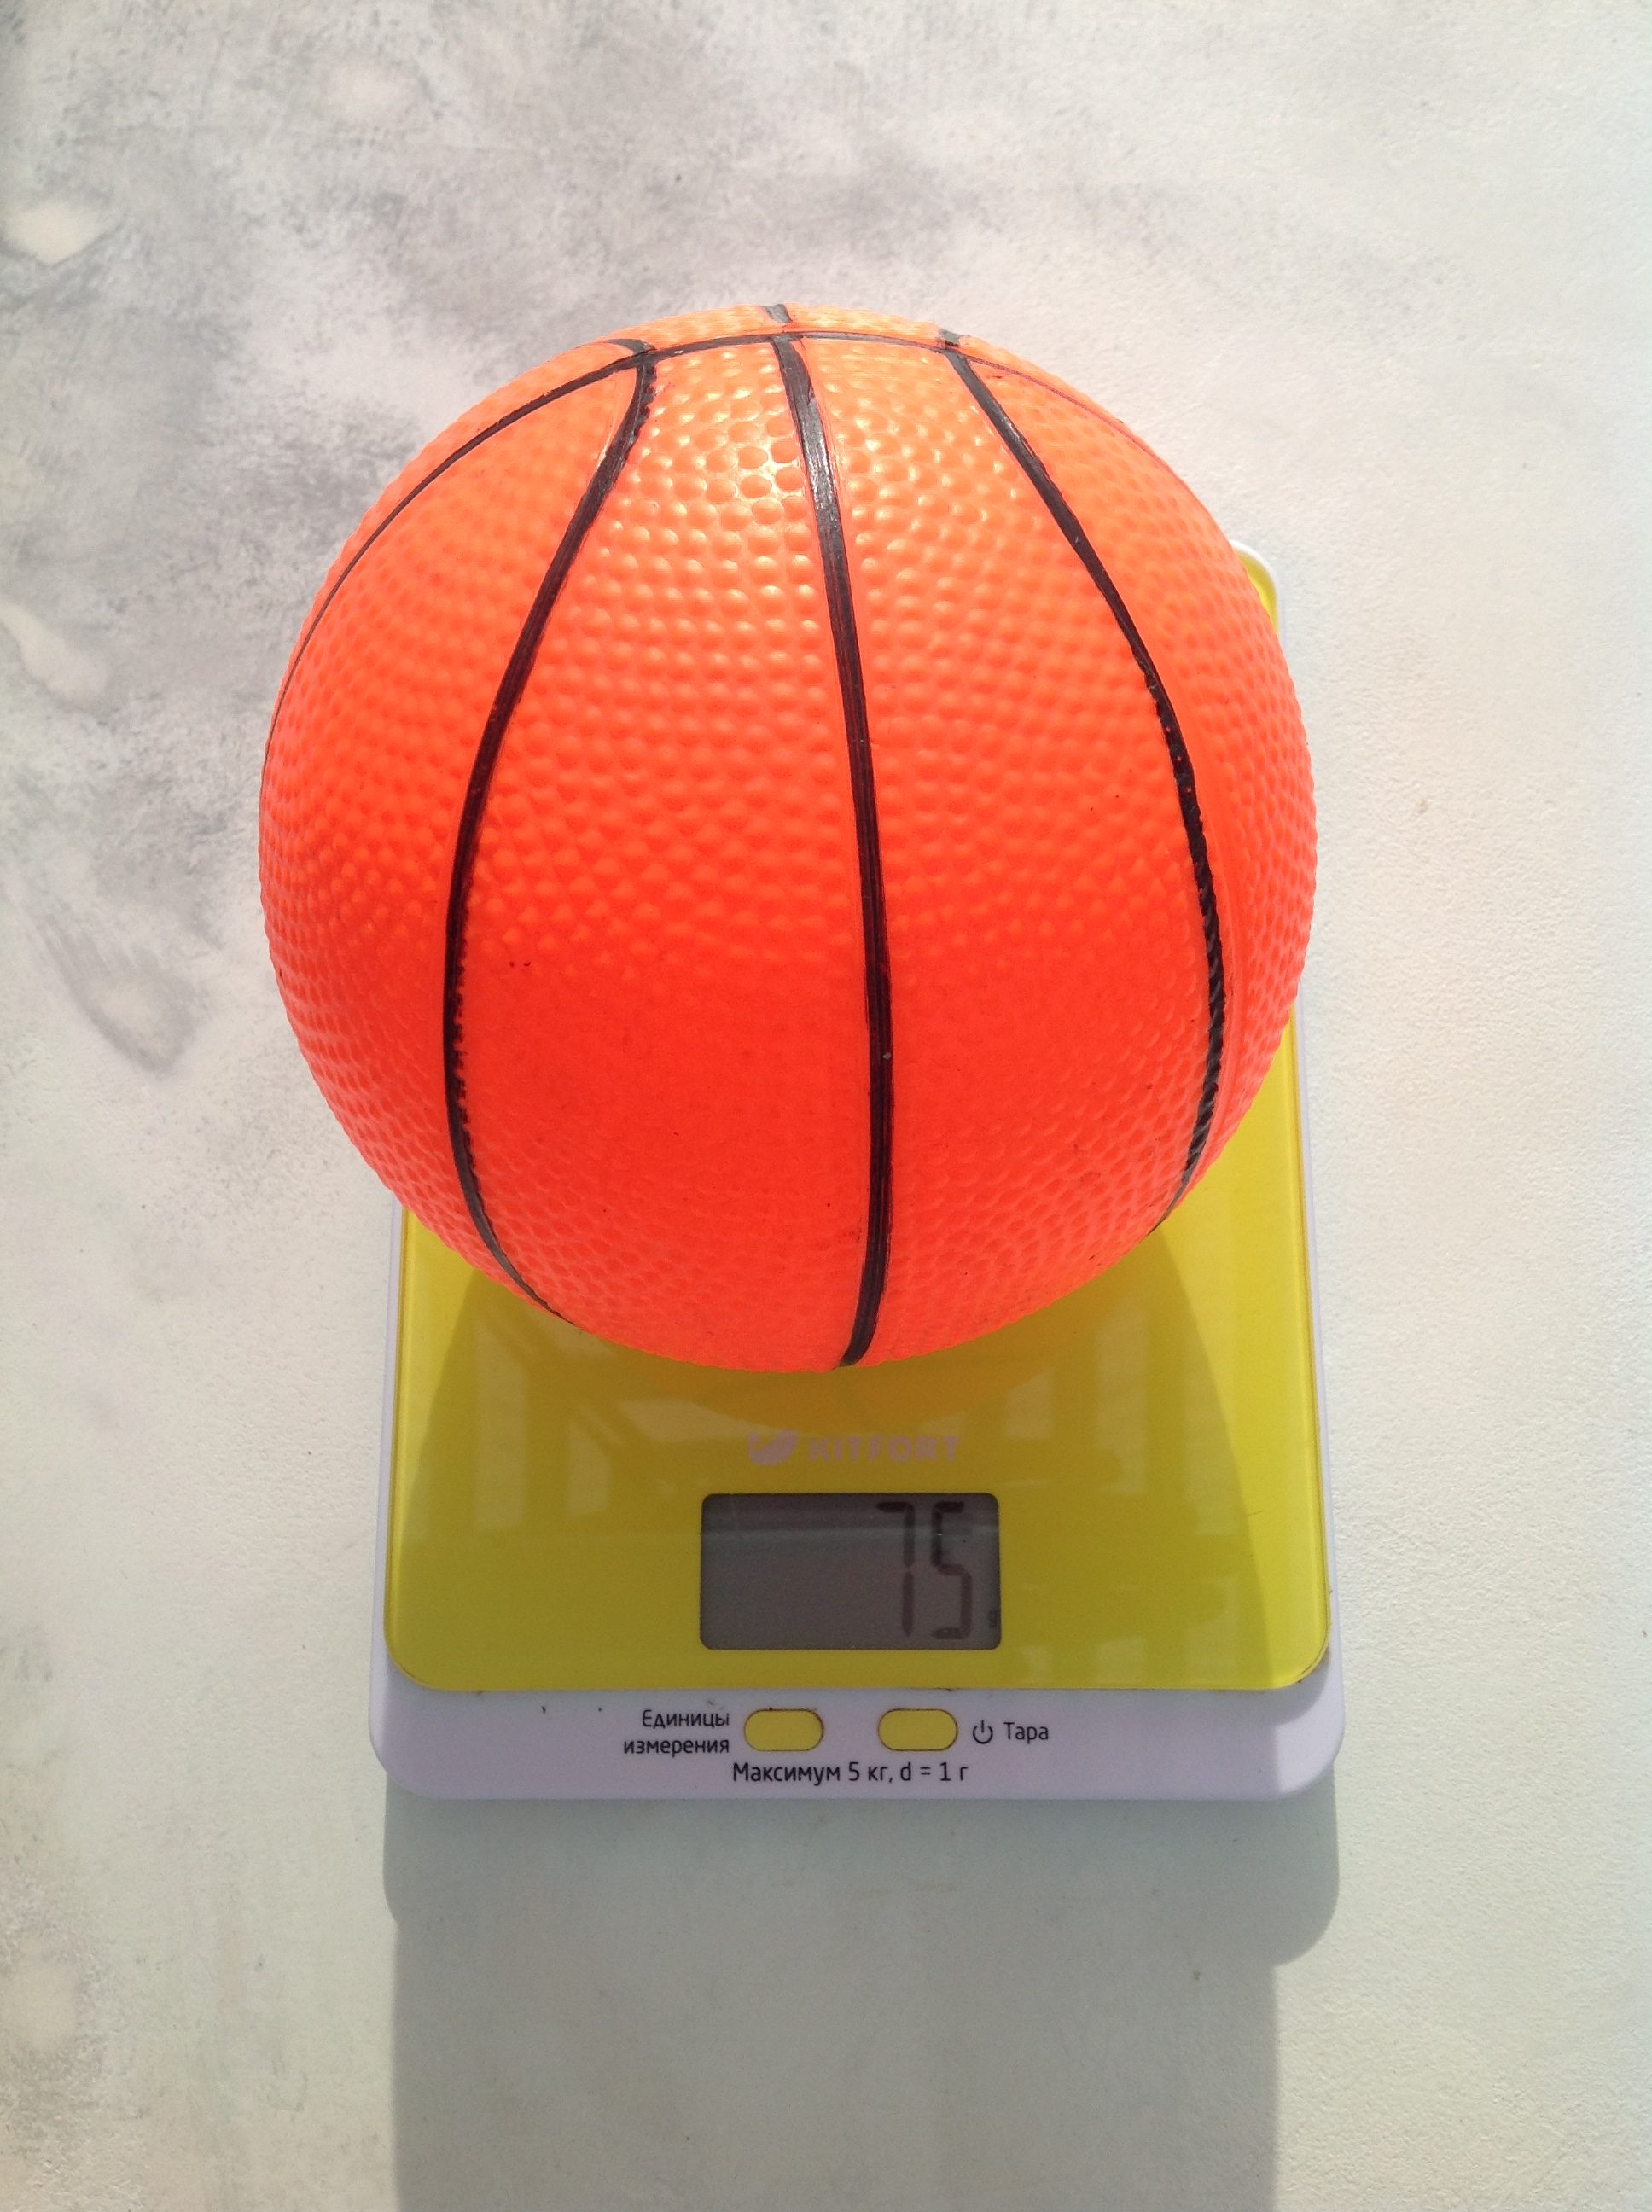 Cik sver bērna basketbola bumba?